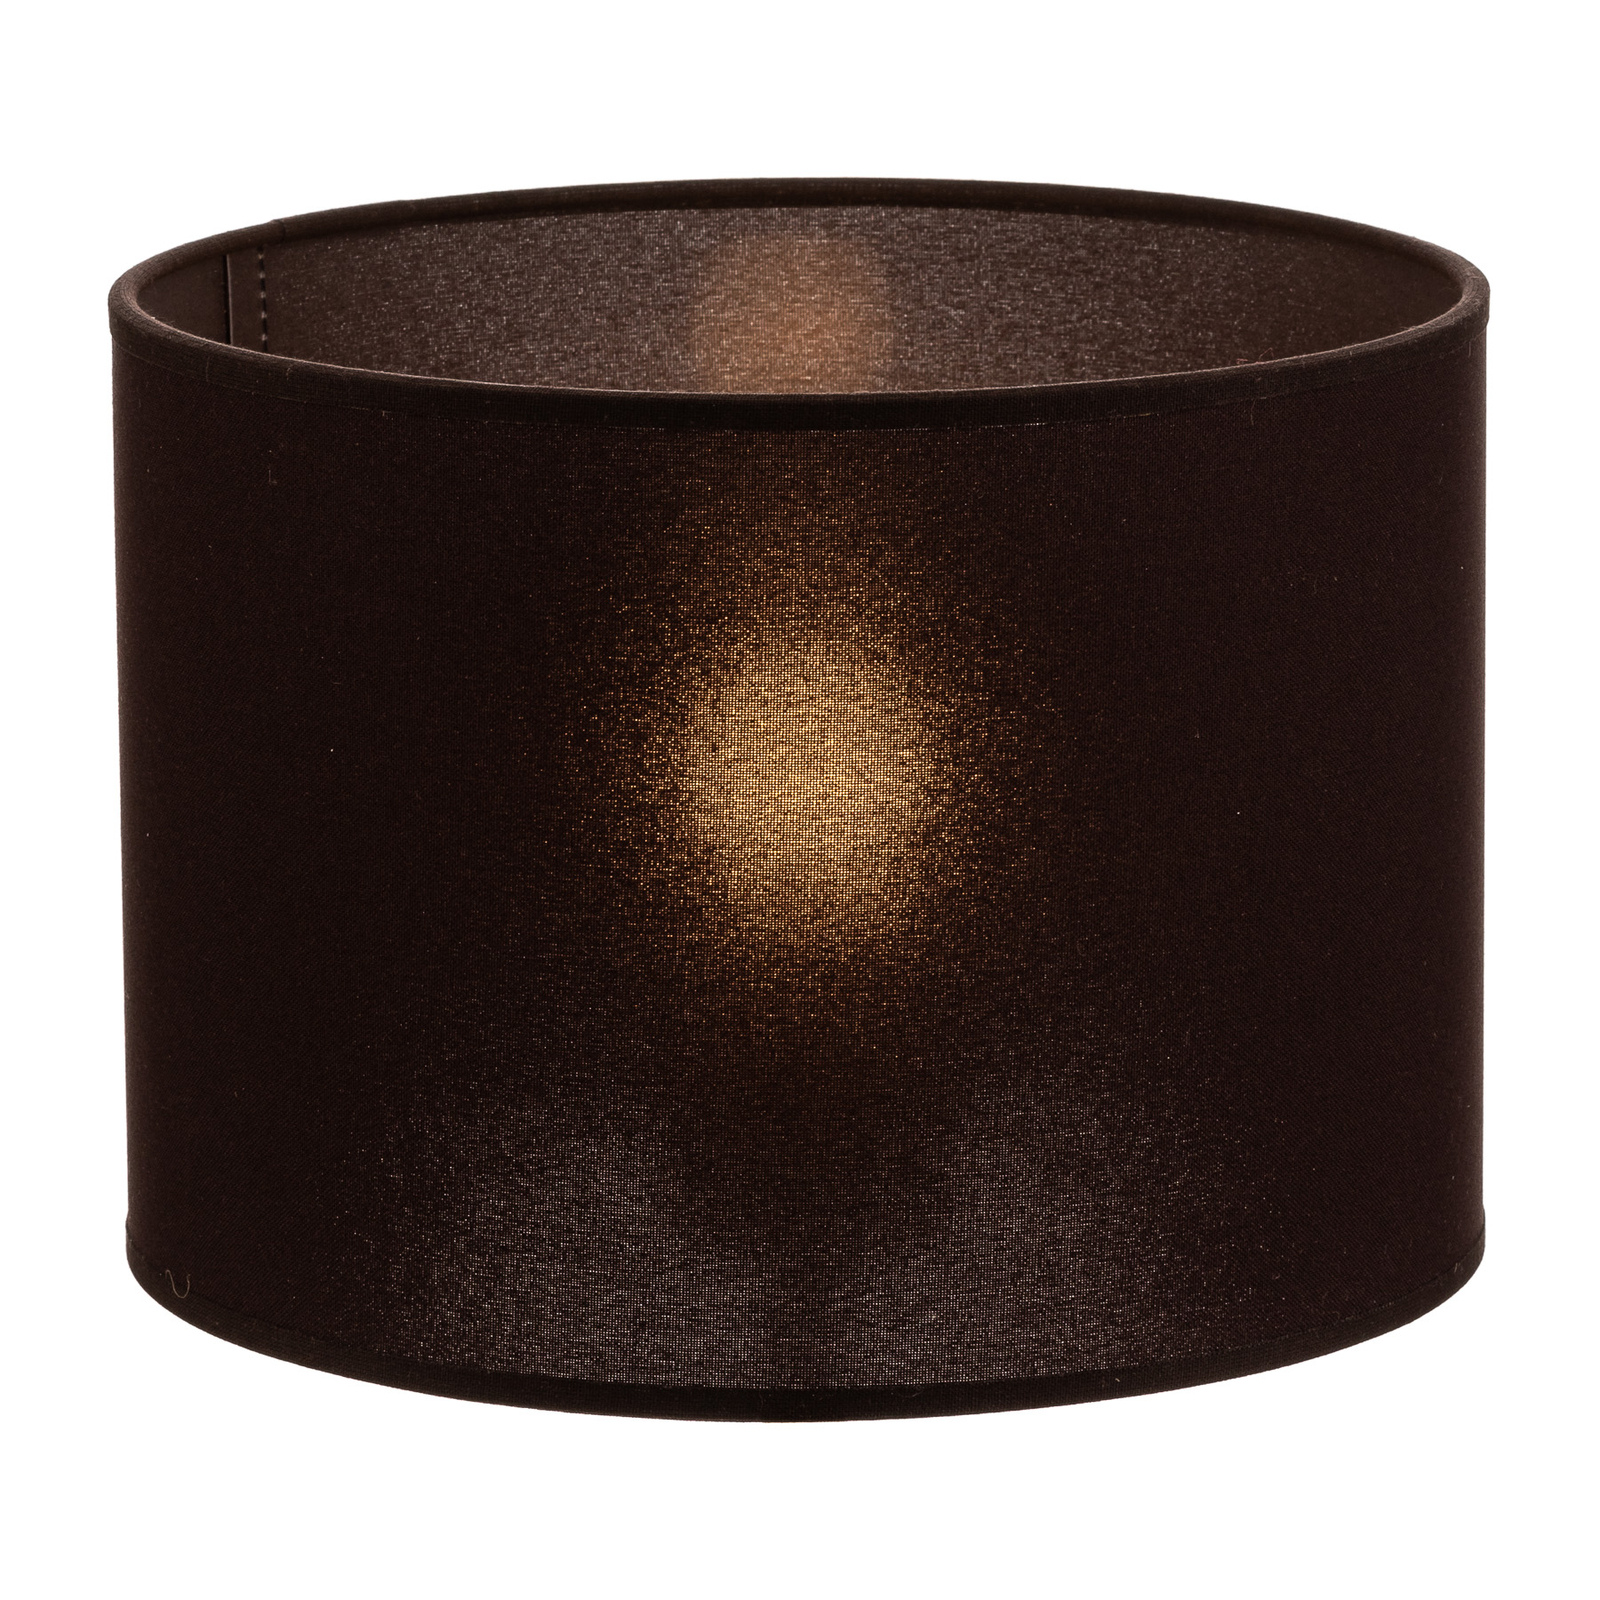 Roller lámpaernyő sötétbarna Ø 25 cm, 18 cm magas